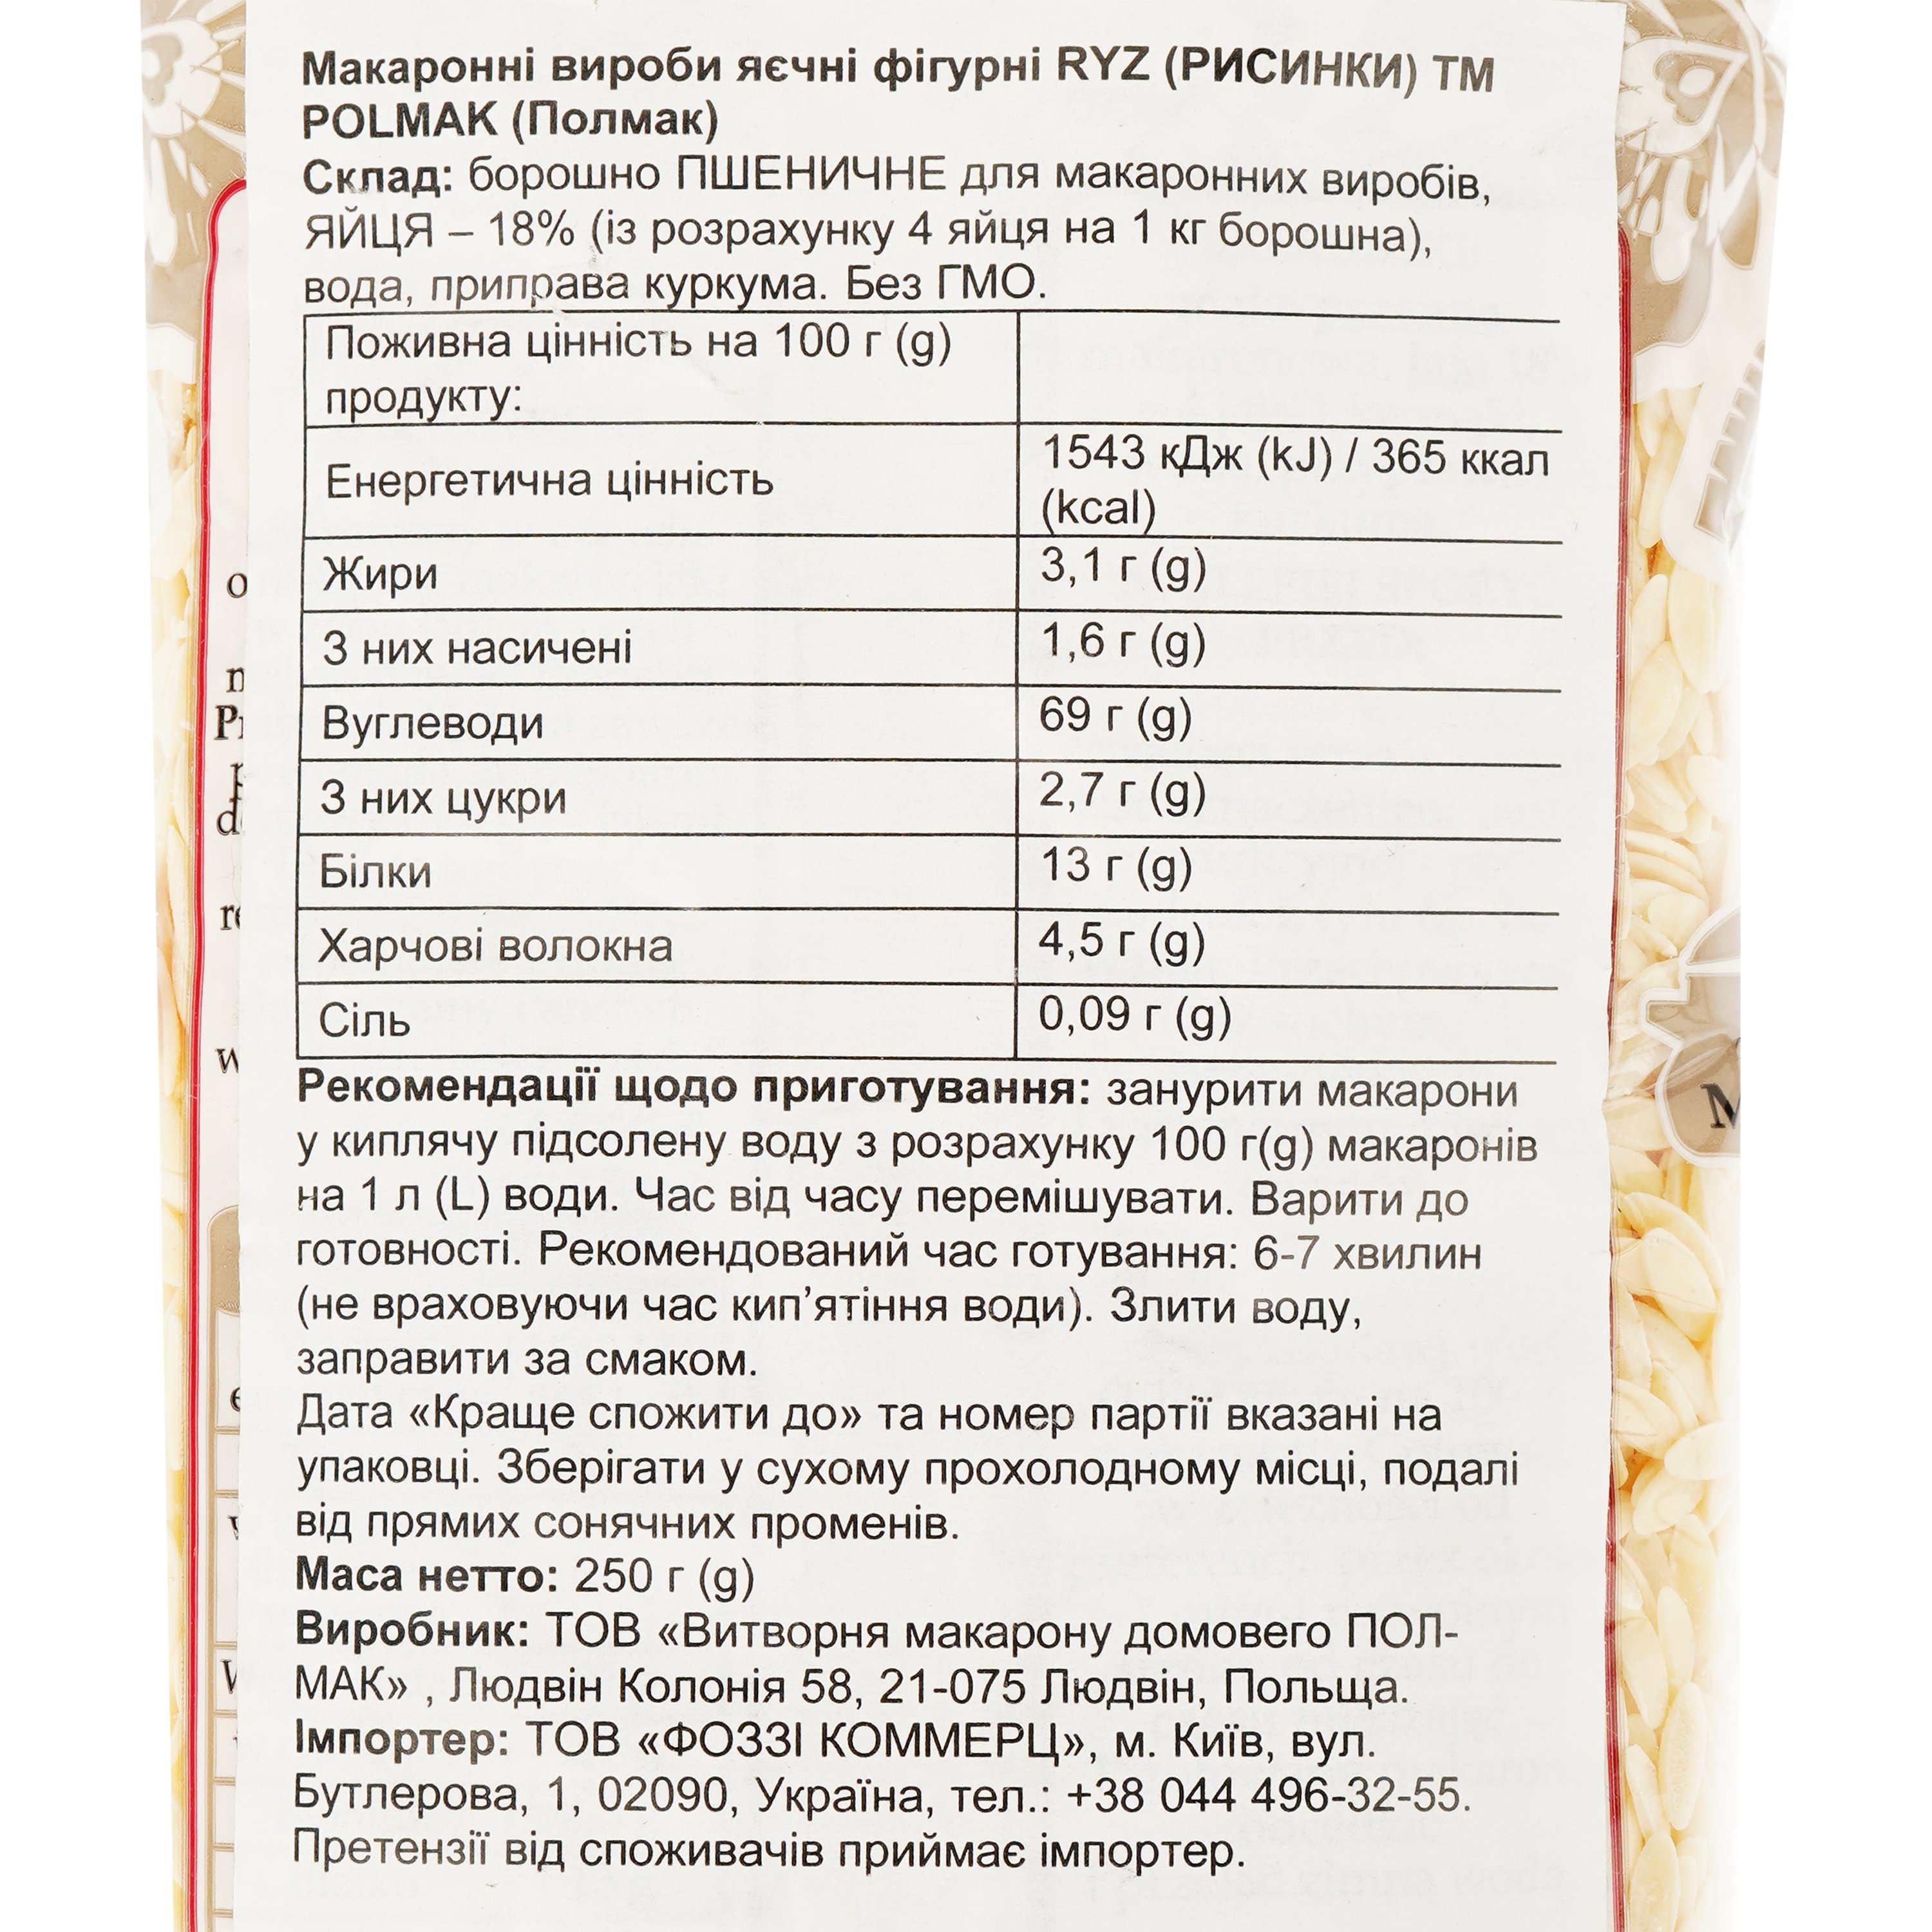 Изделия макаронные Polmak Ryz фигурные яичные, 250 г (920050) - фото 3